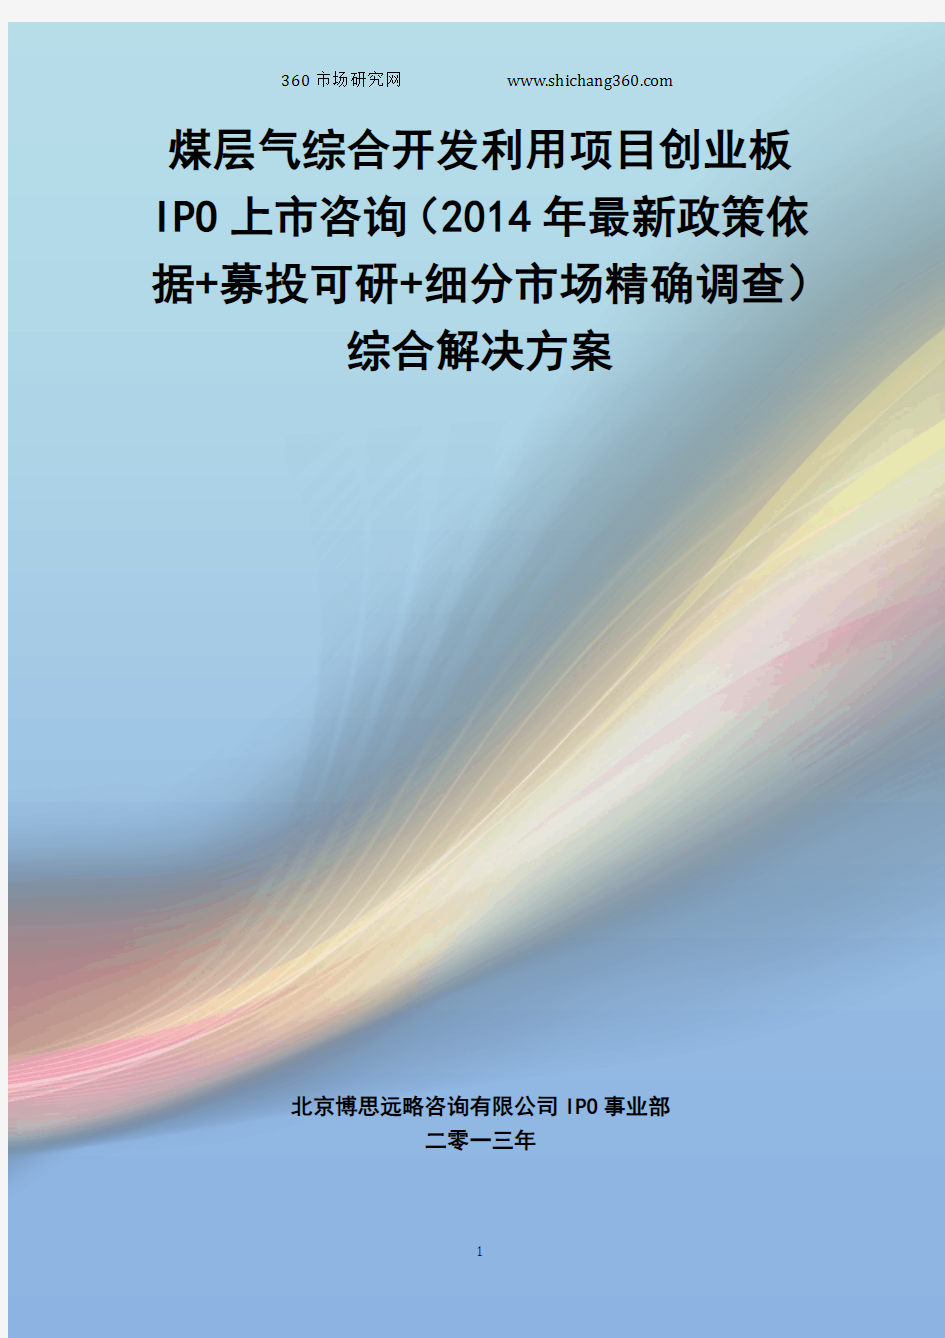 煤层气综合开发利用IPO上市咨询(2014年最新政策+募投可研+细分市场调查)综合解决方案